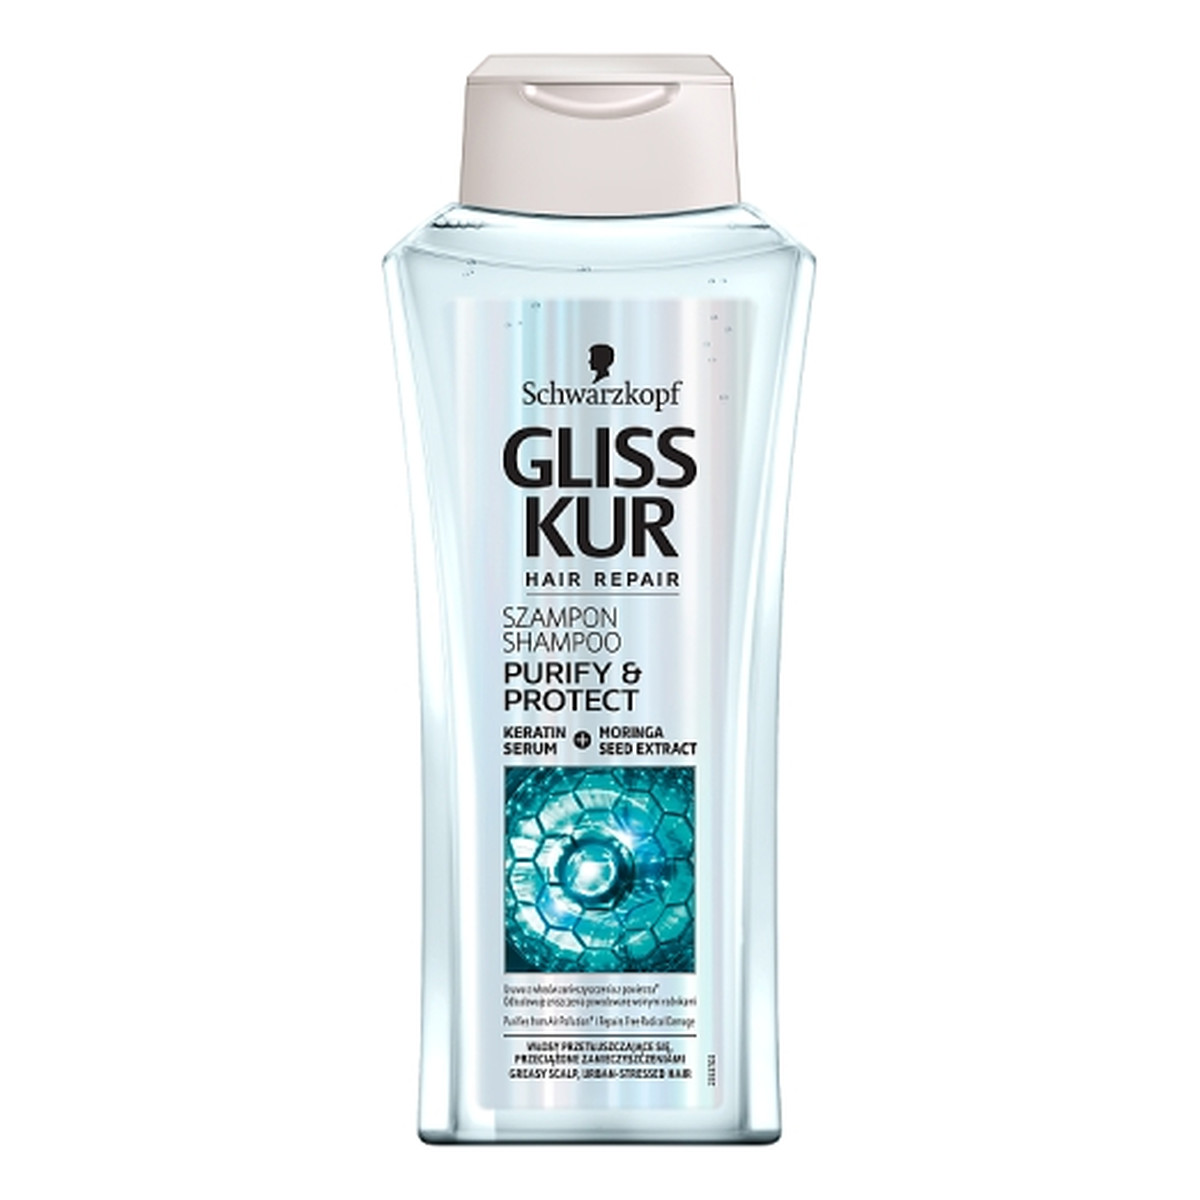 gliss-purify-protect-szampon-400ml wizaz